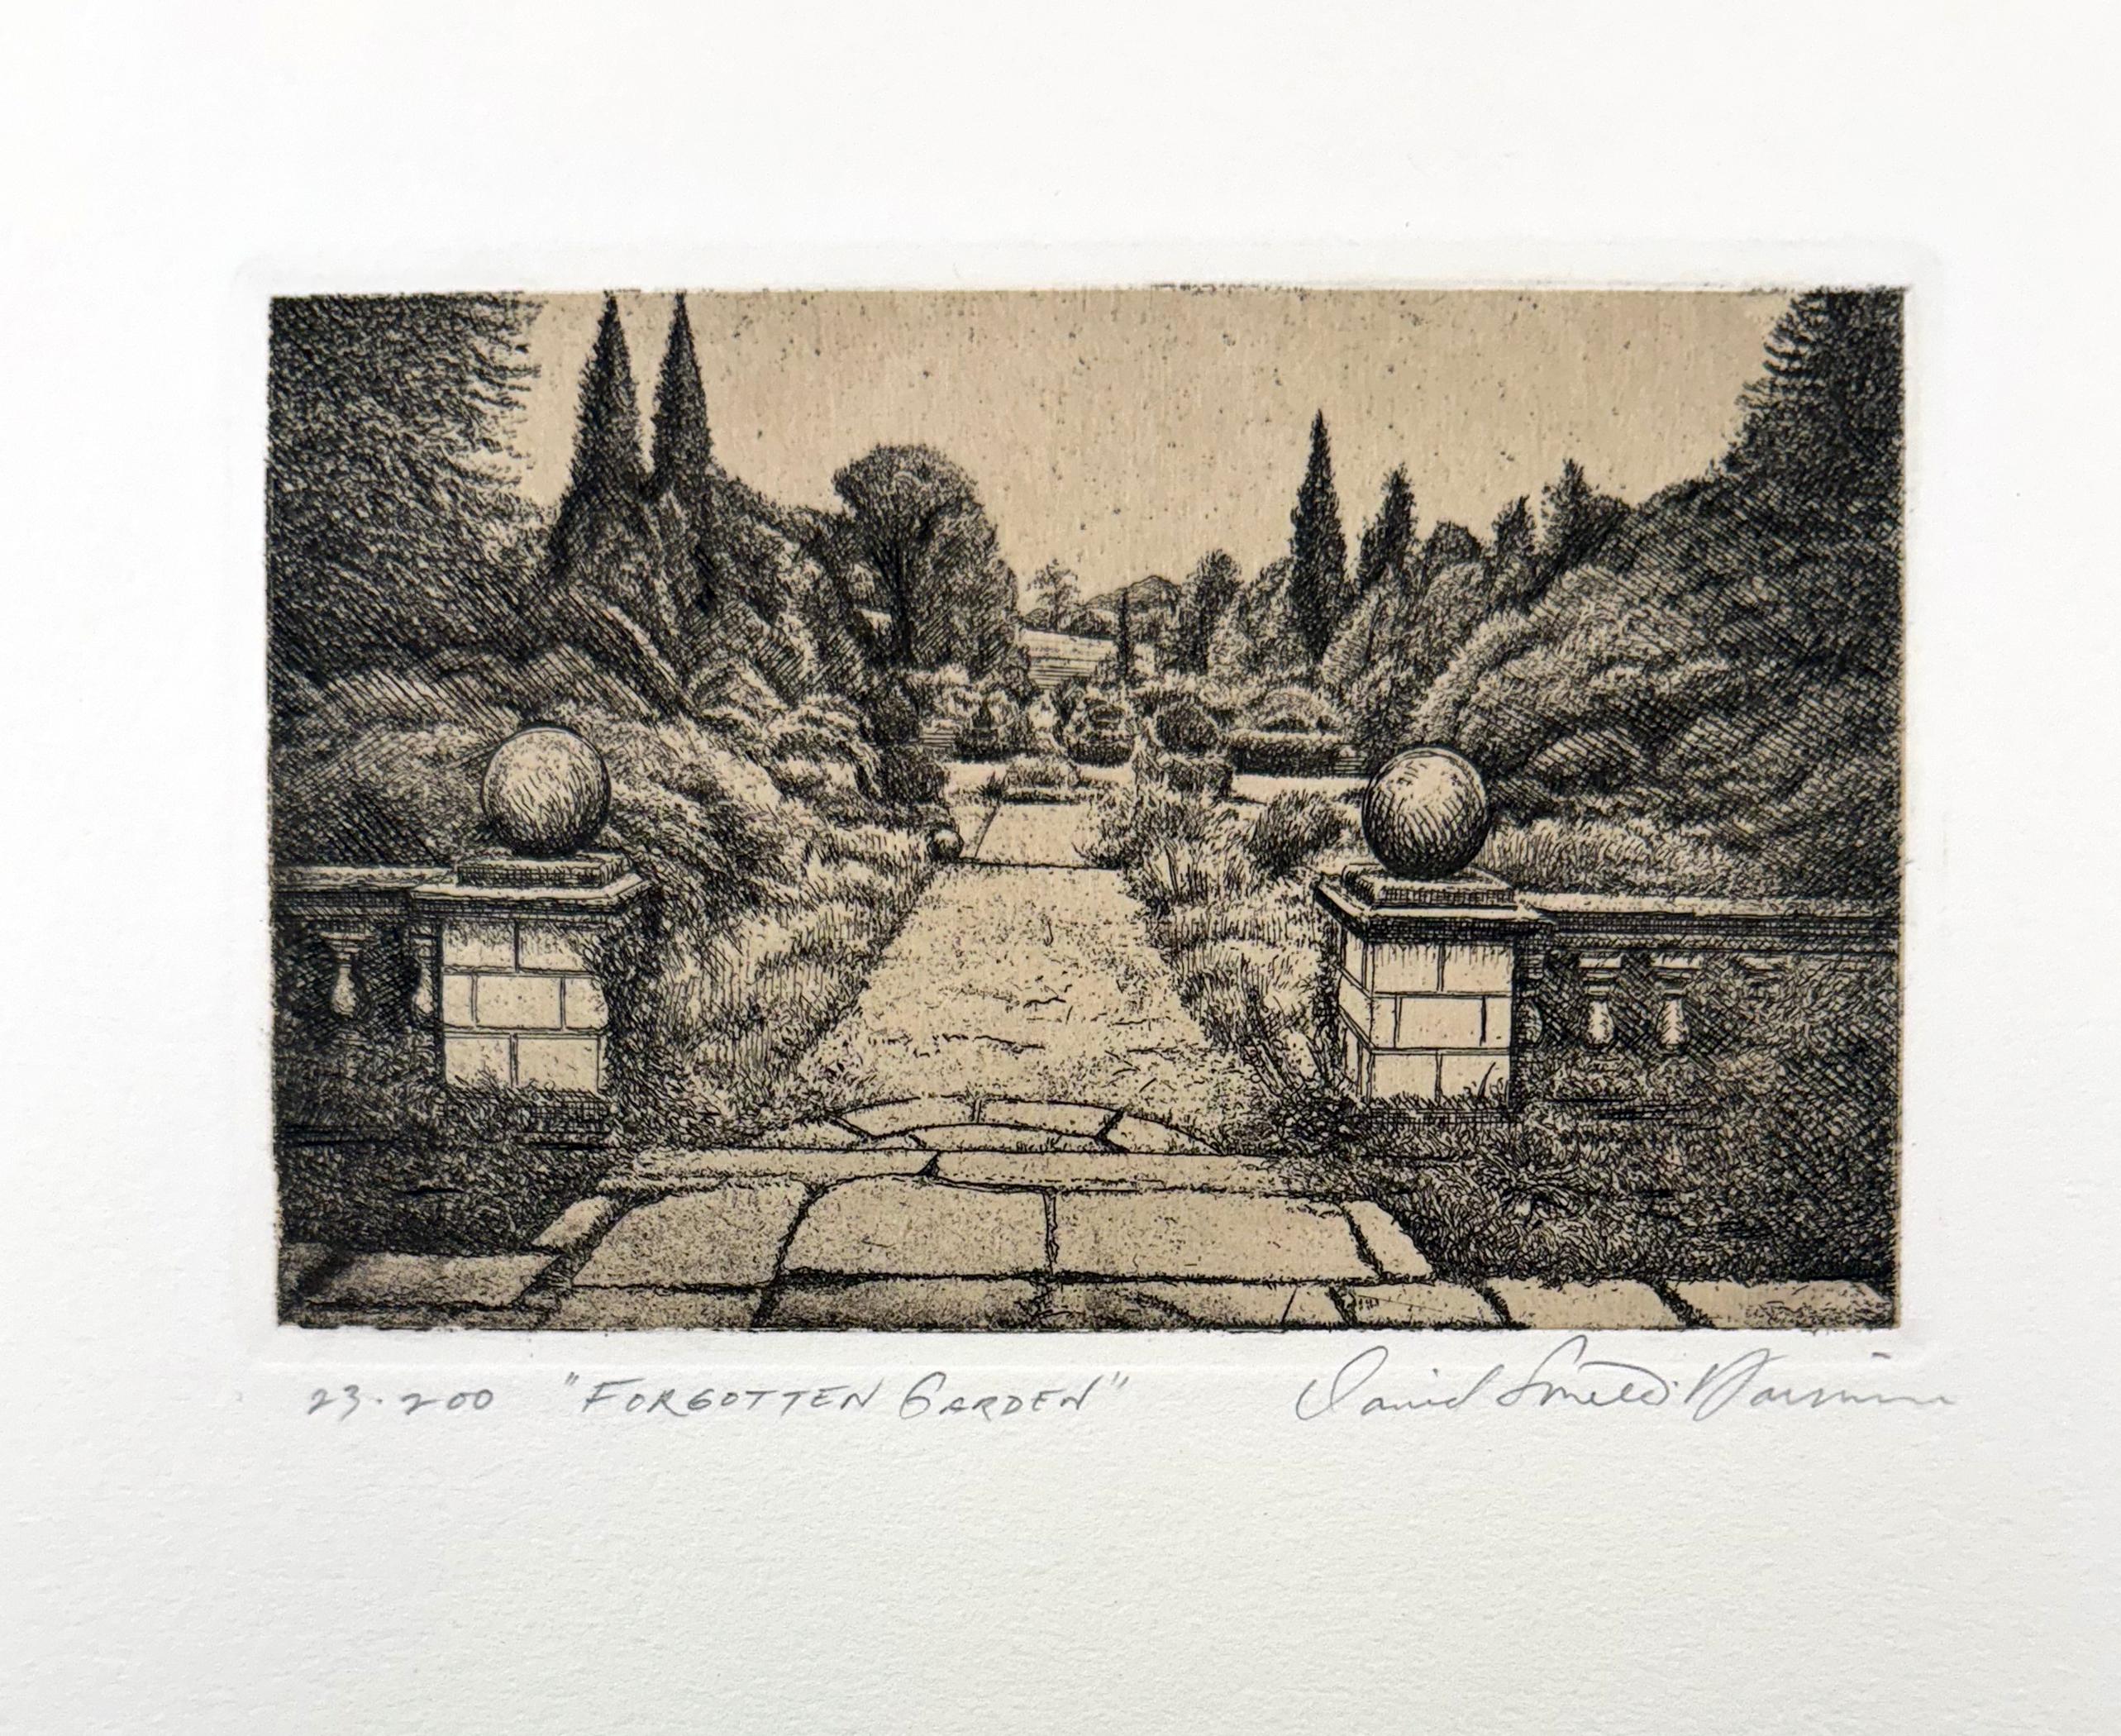 Forgotten Garden - Print by David Smith-Harrison